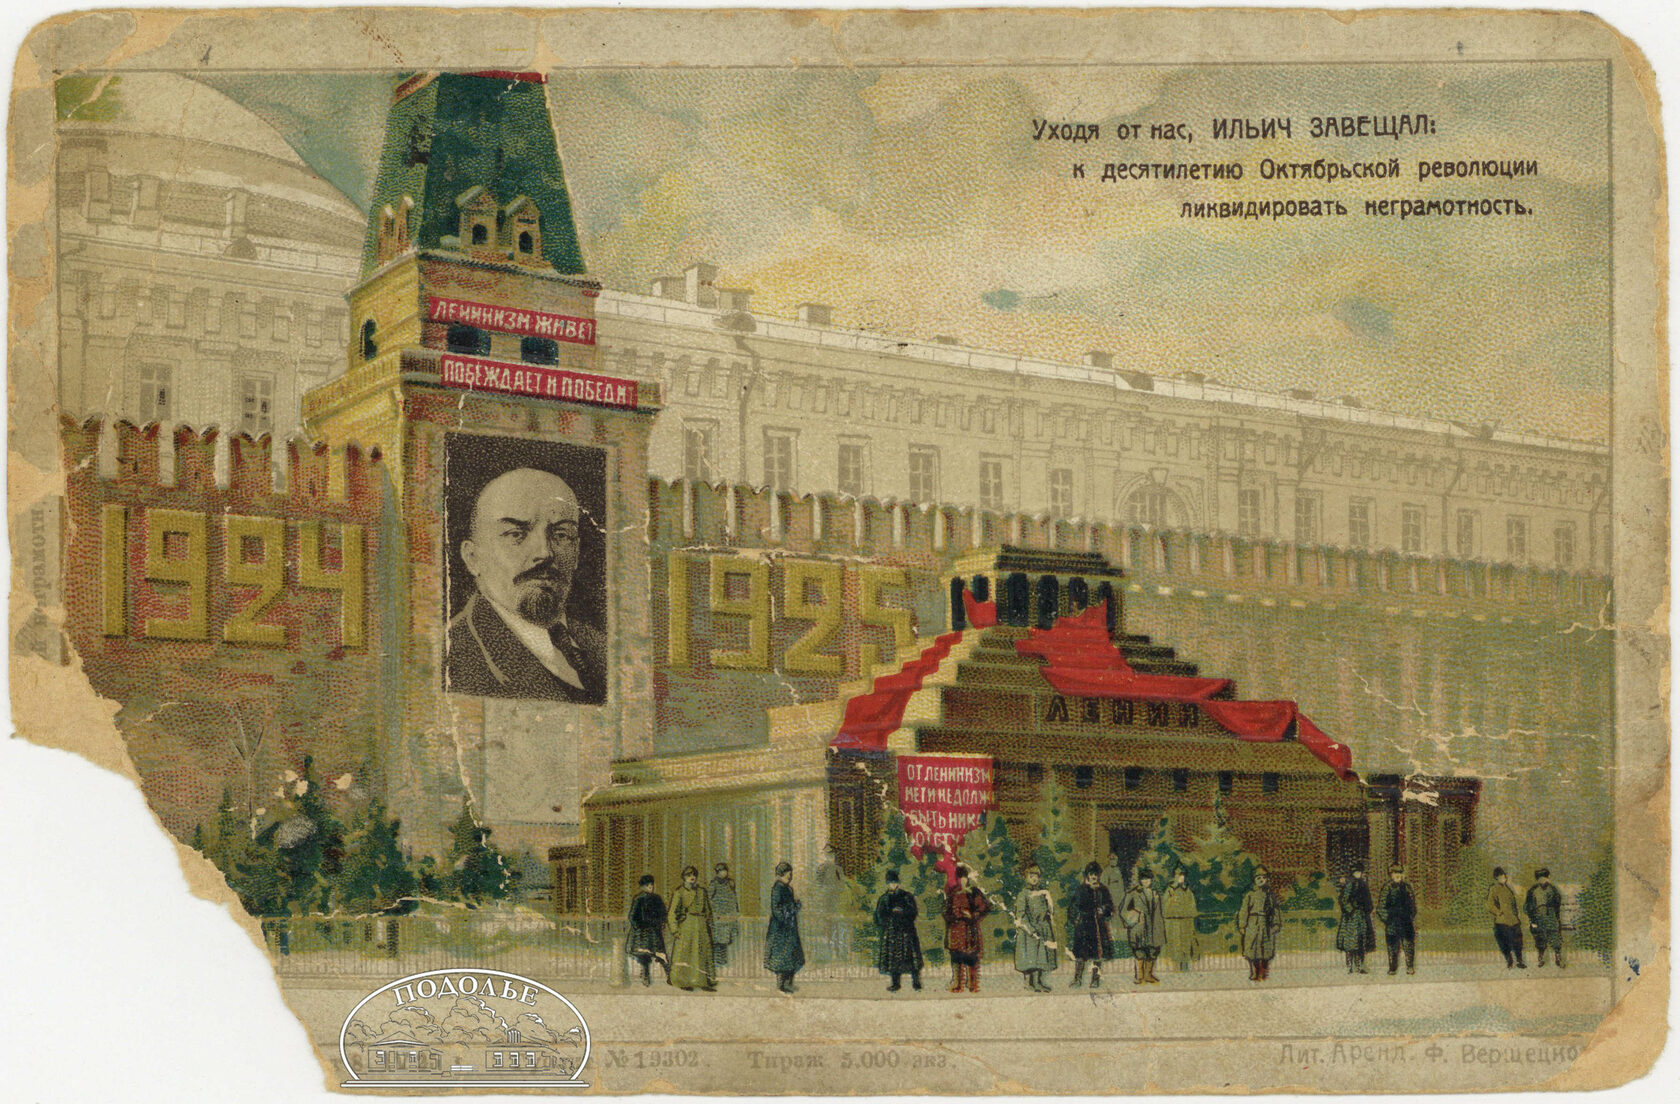 Мавзолей Ленина картина